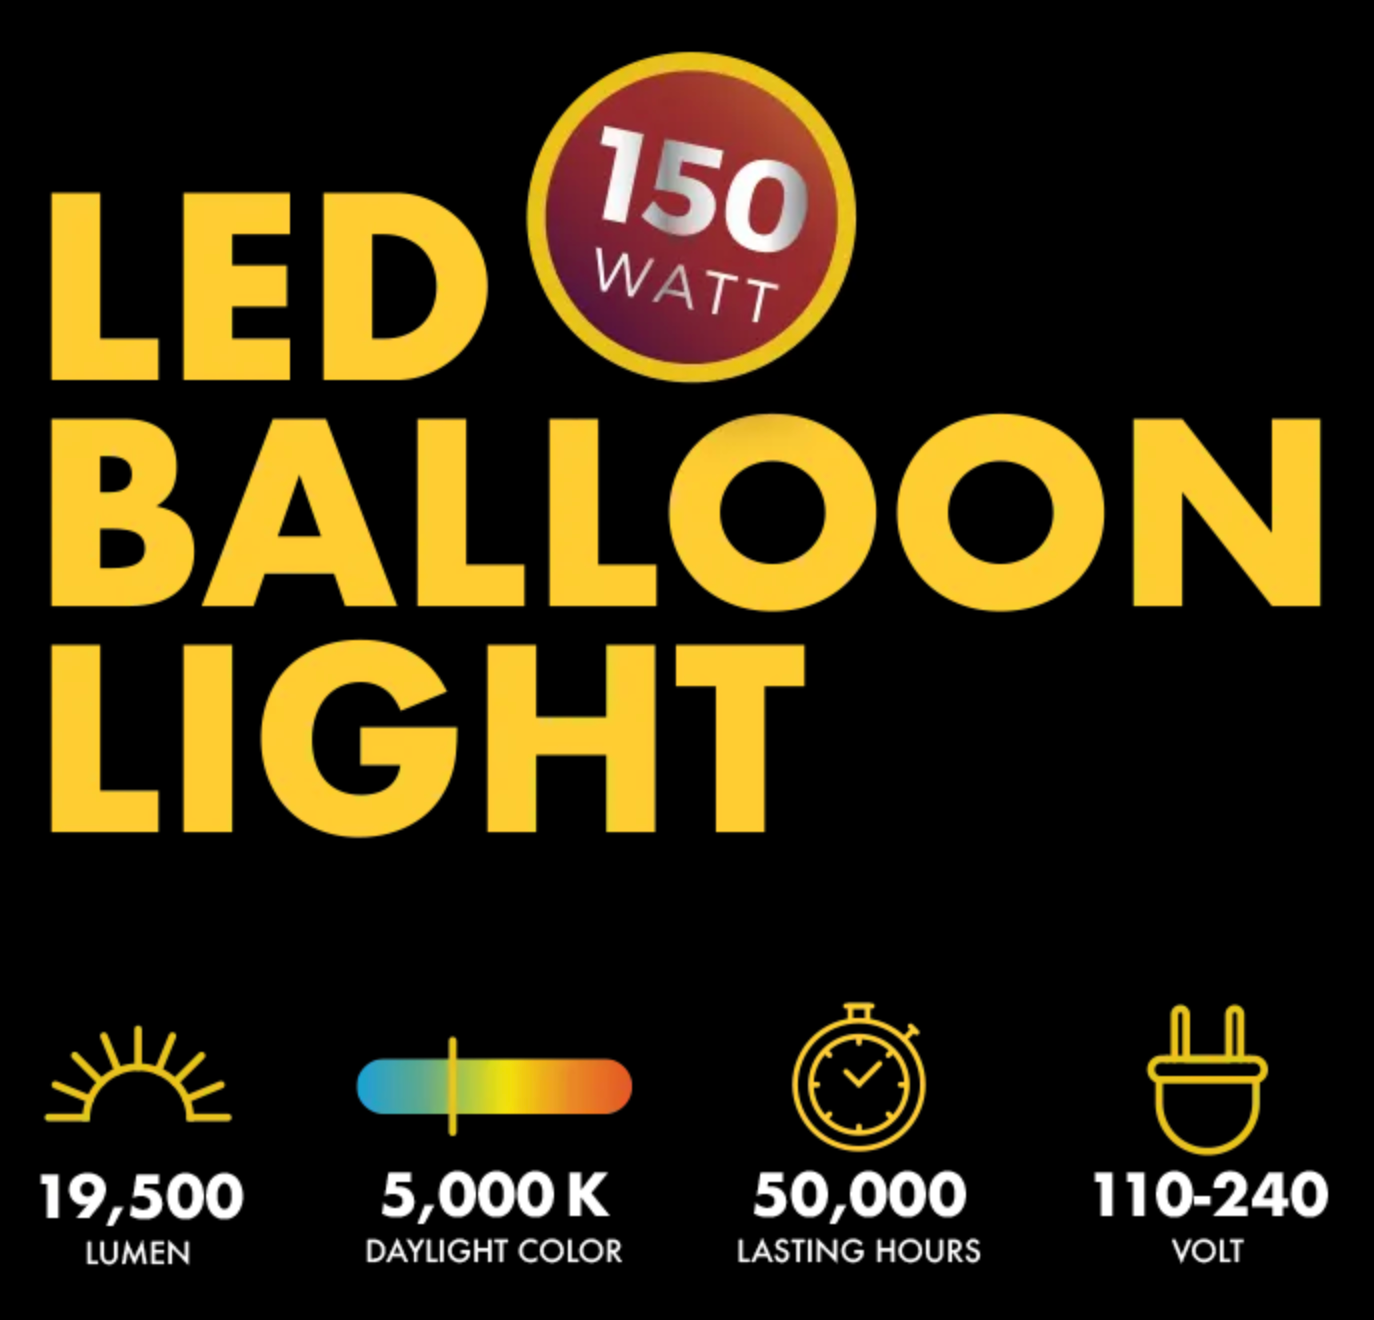 SeeDevil 150-watt balloon light detailed features